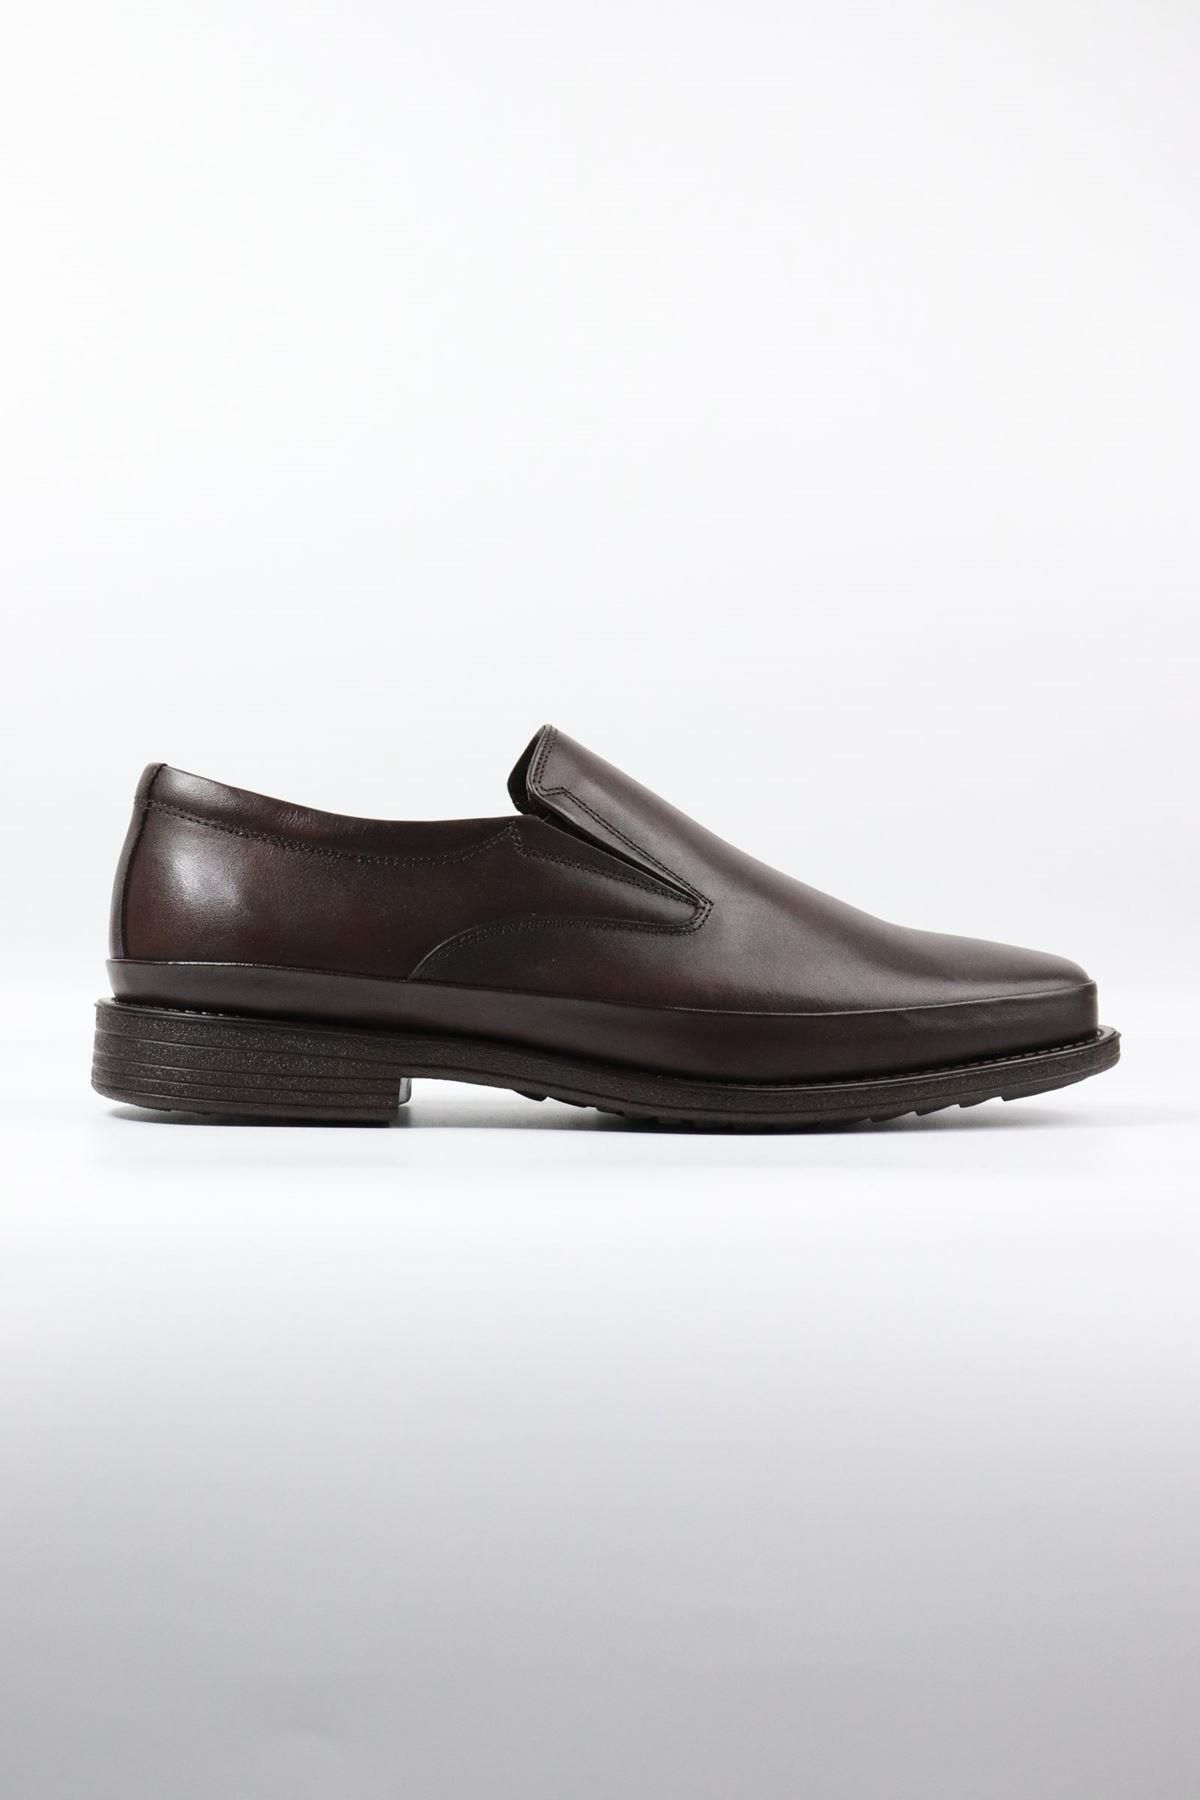 DANACI Danacı - 668 Kahverengi Hakiki Deri Erkek Klasik Ayakkabı